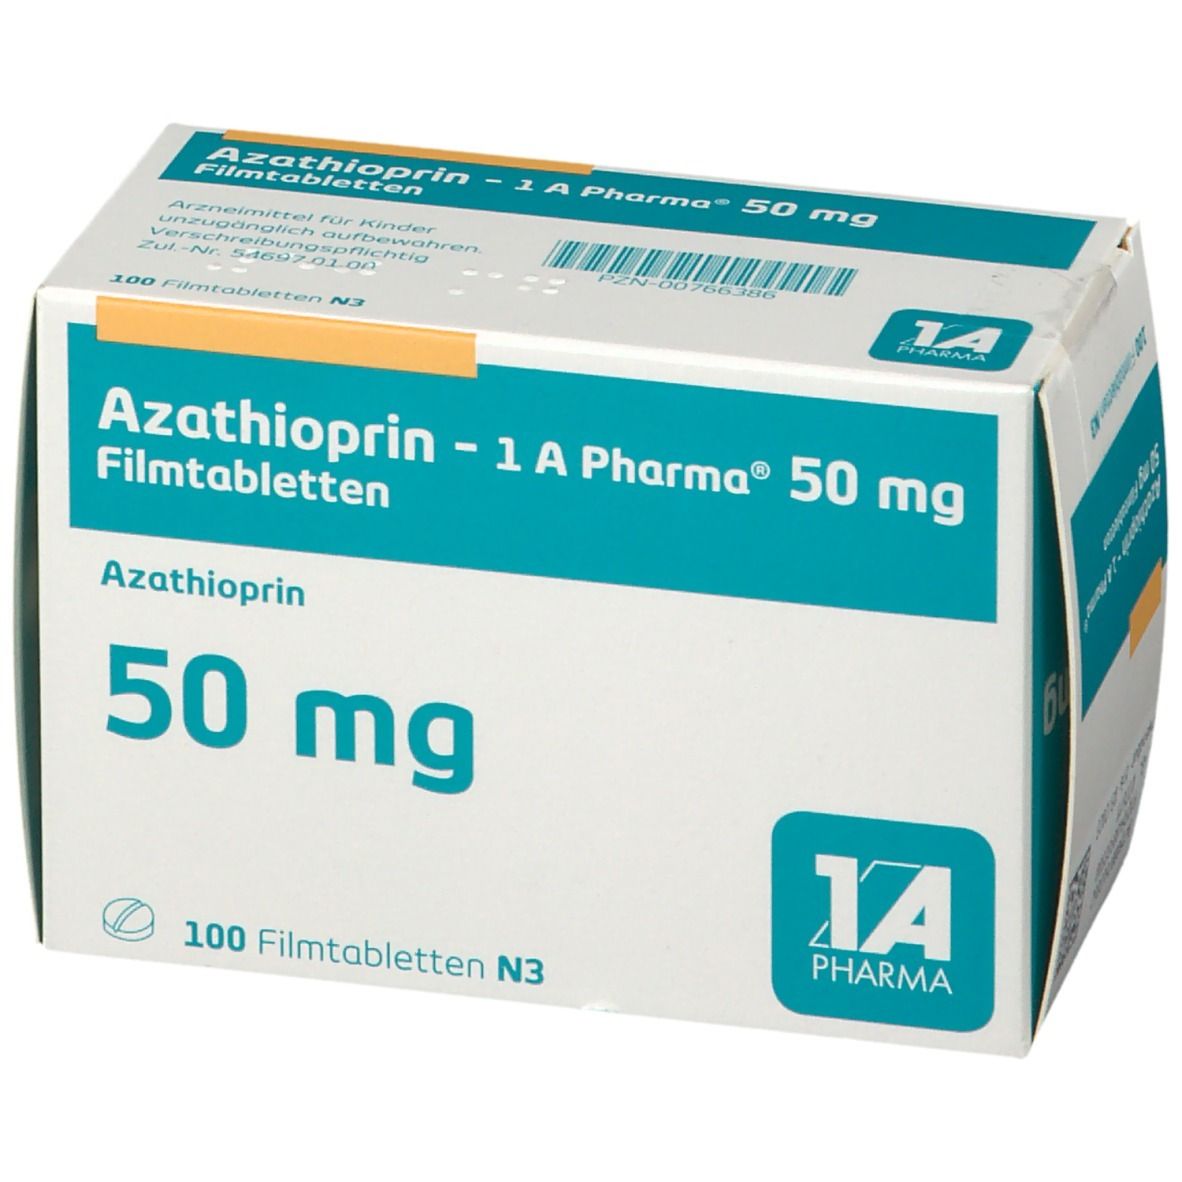 Azathioprin 1A Pharma® 50Mg